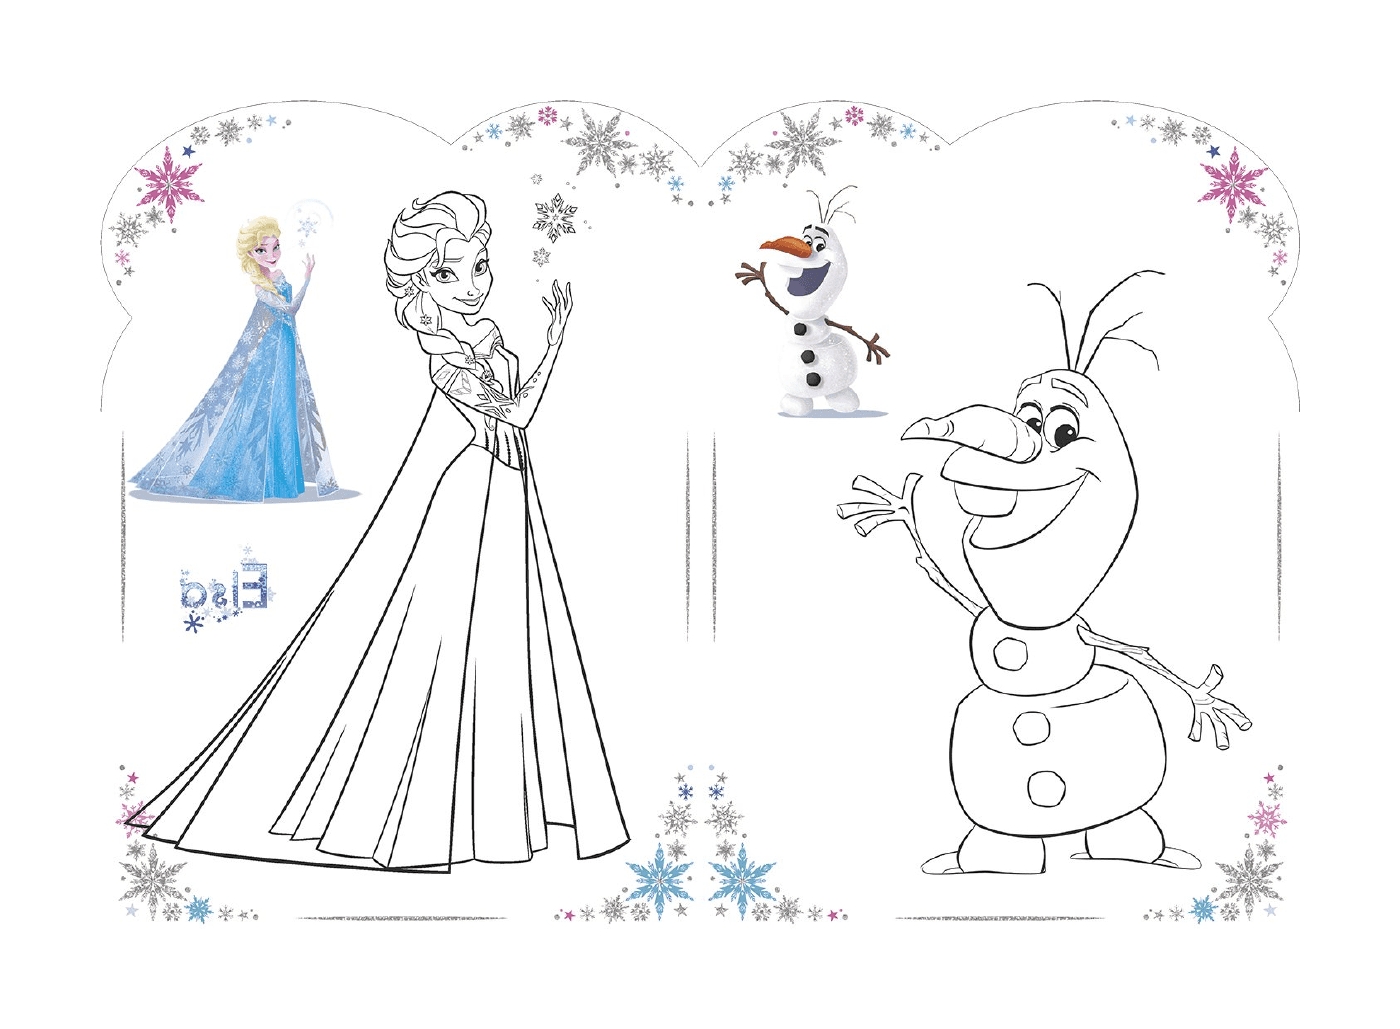  Olaf y Elsa de La Reine des neiges, Disney 2018 